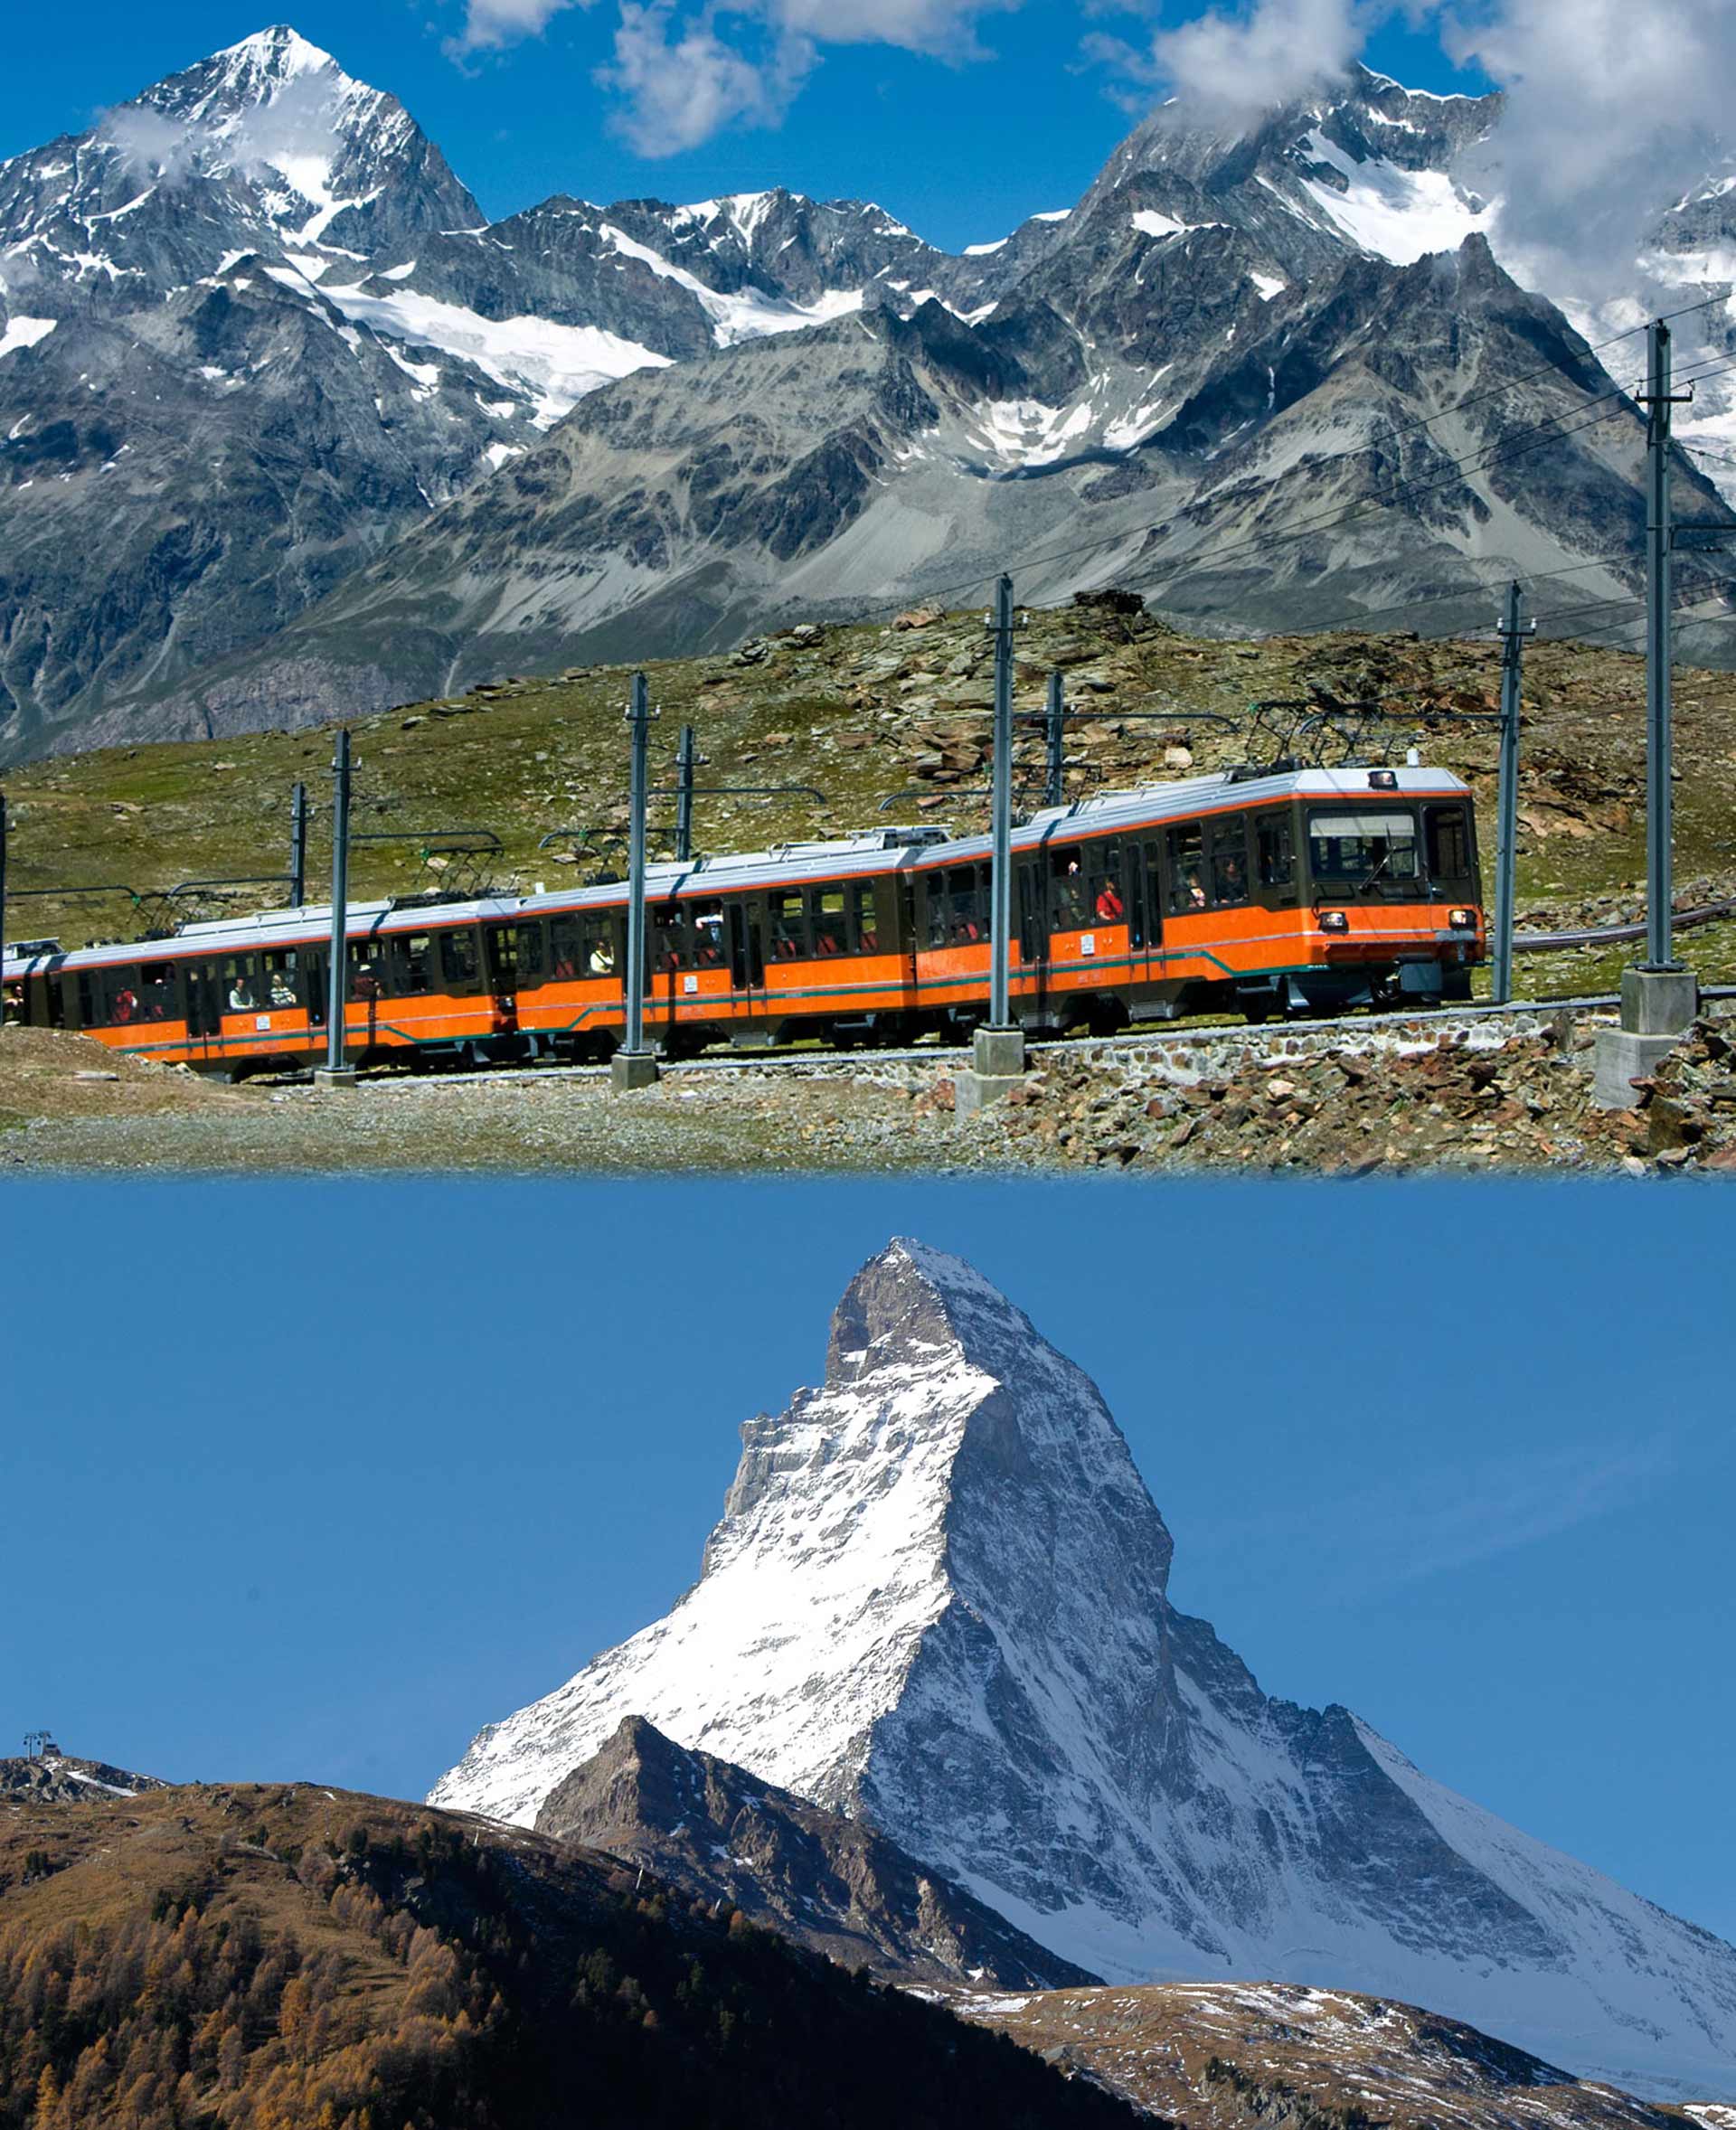 Le Gornergrat Bahn conduit du centre du village de Zermatt au Gornergrat (3'089 m) en 33 minutes. Ici s'ouvre l'un des plus beaux panoramas alpins du monde, avec vue sur le Cervin (4'478 m).